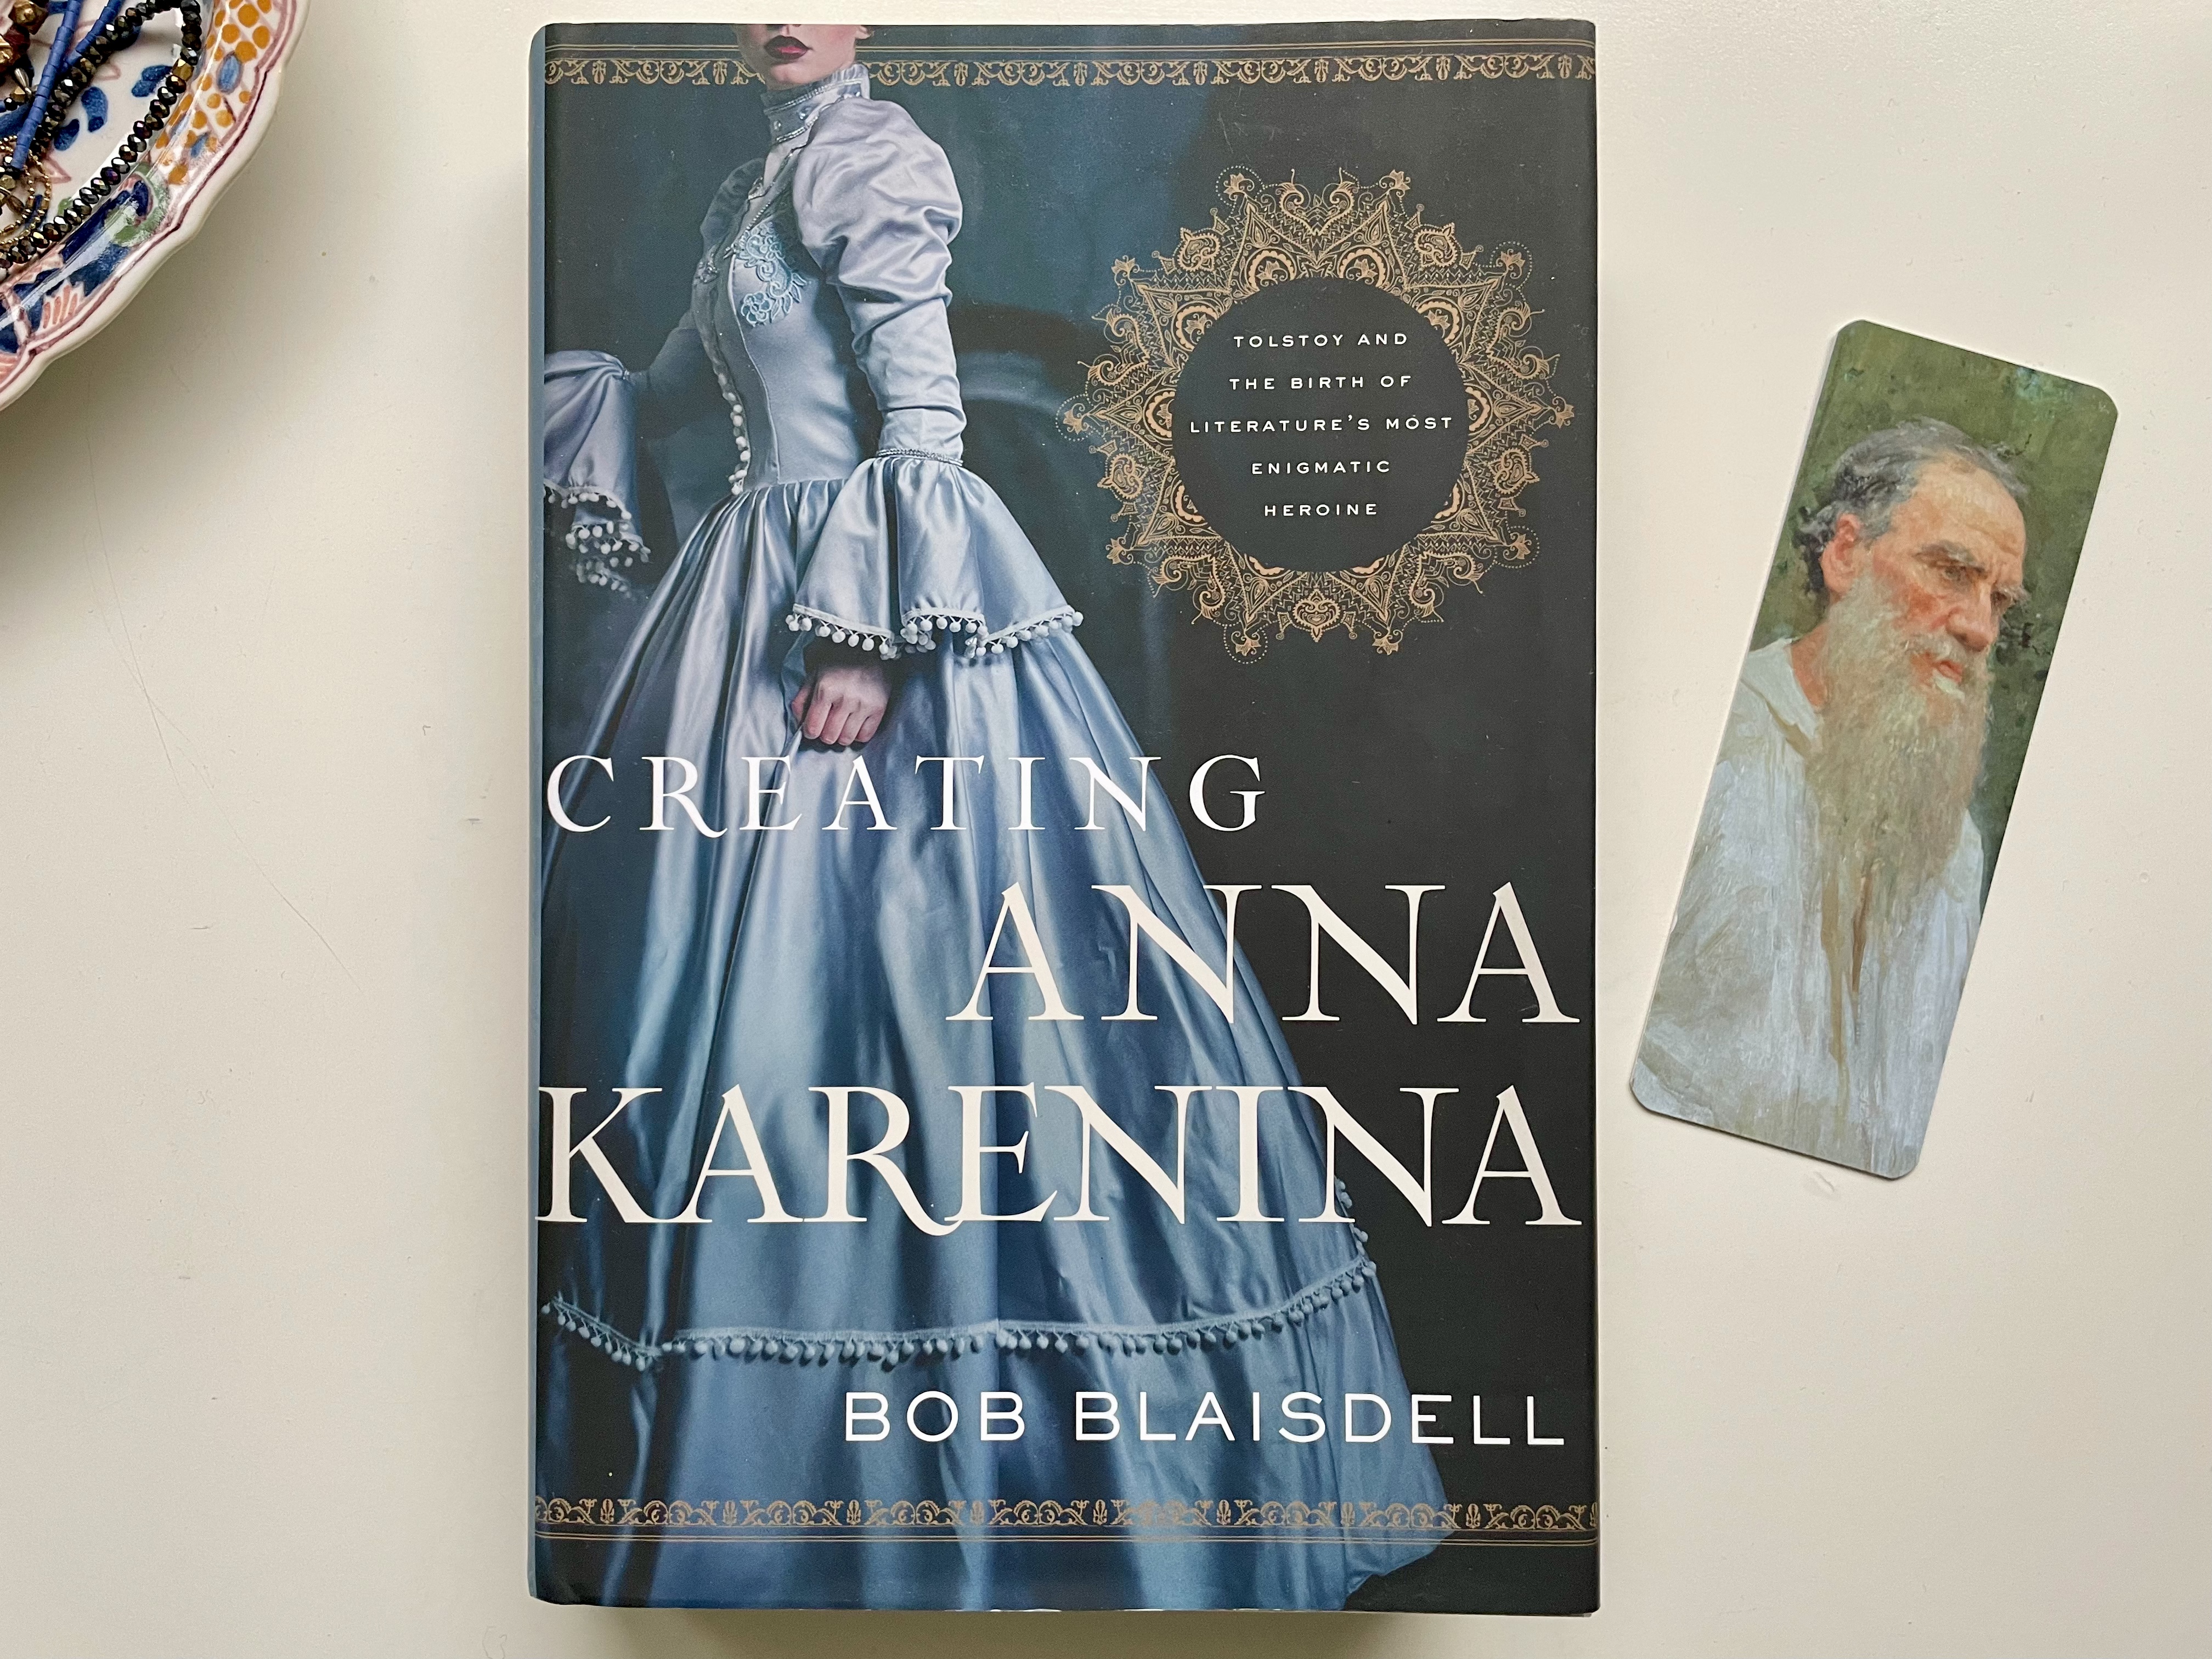 het boek Creating Anna Karenina ligt op mijn bureau met een boekenlegger met Tolstoj erop ernaast